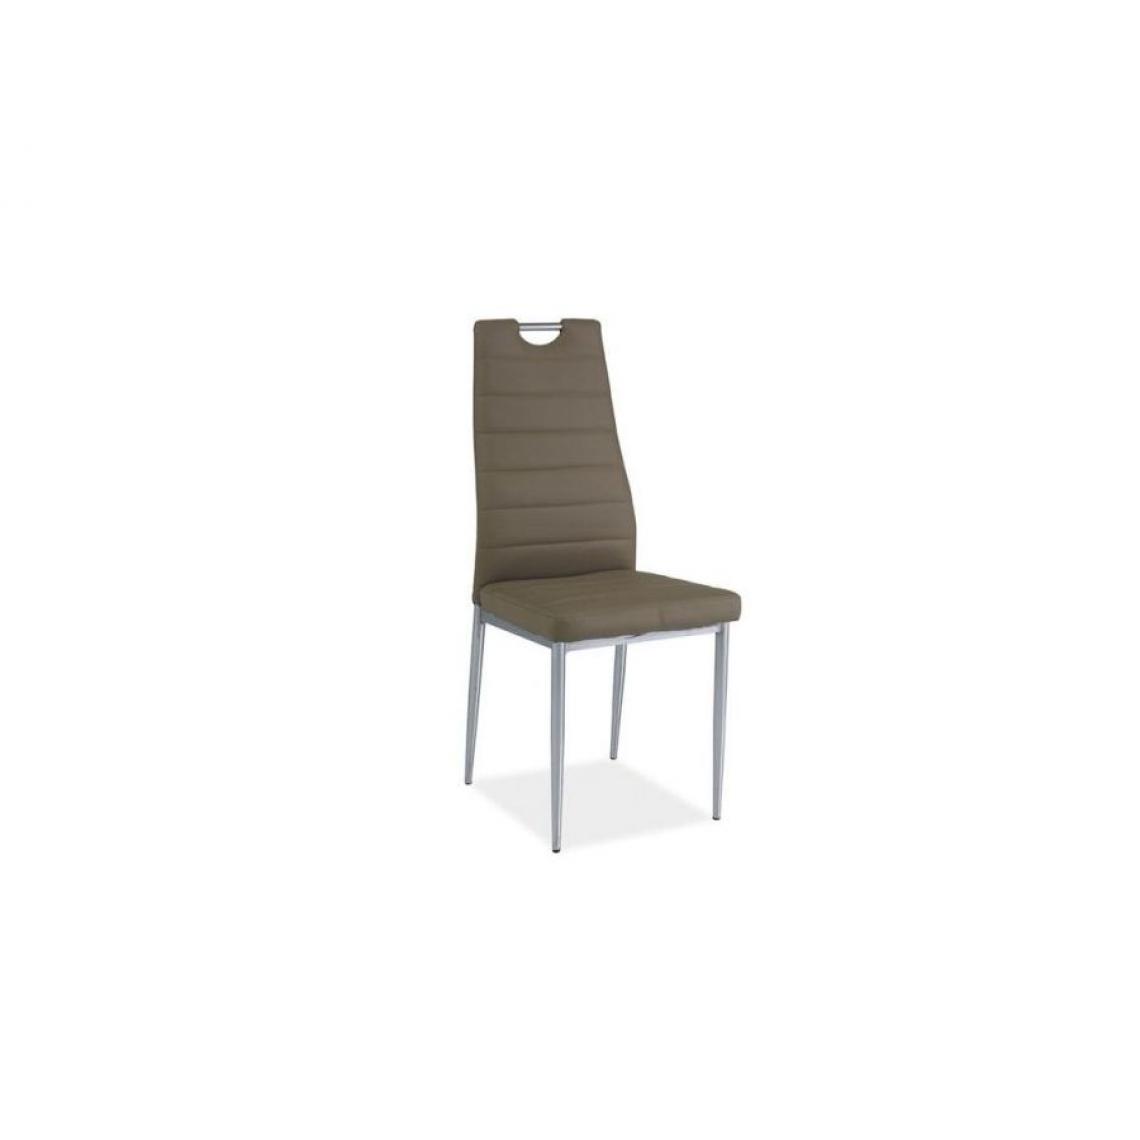 Hucoco - INAYA | Chaise style minimaliste salle à manger bureau | Dimensions : 96x40x38cm | Rembourrage en cuir écologique | Dossier profilé - Khaki - Chaises